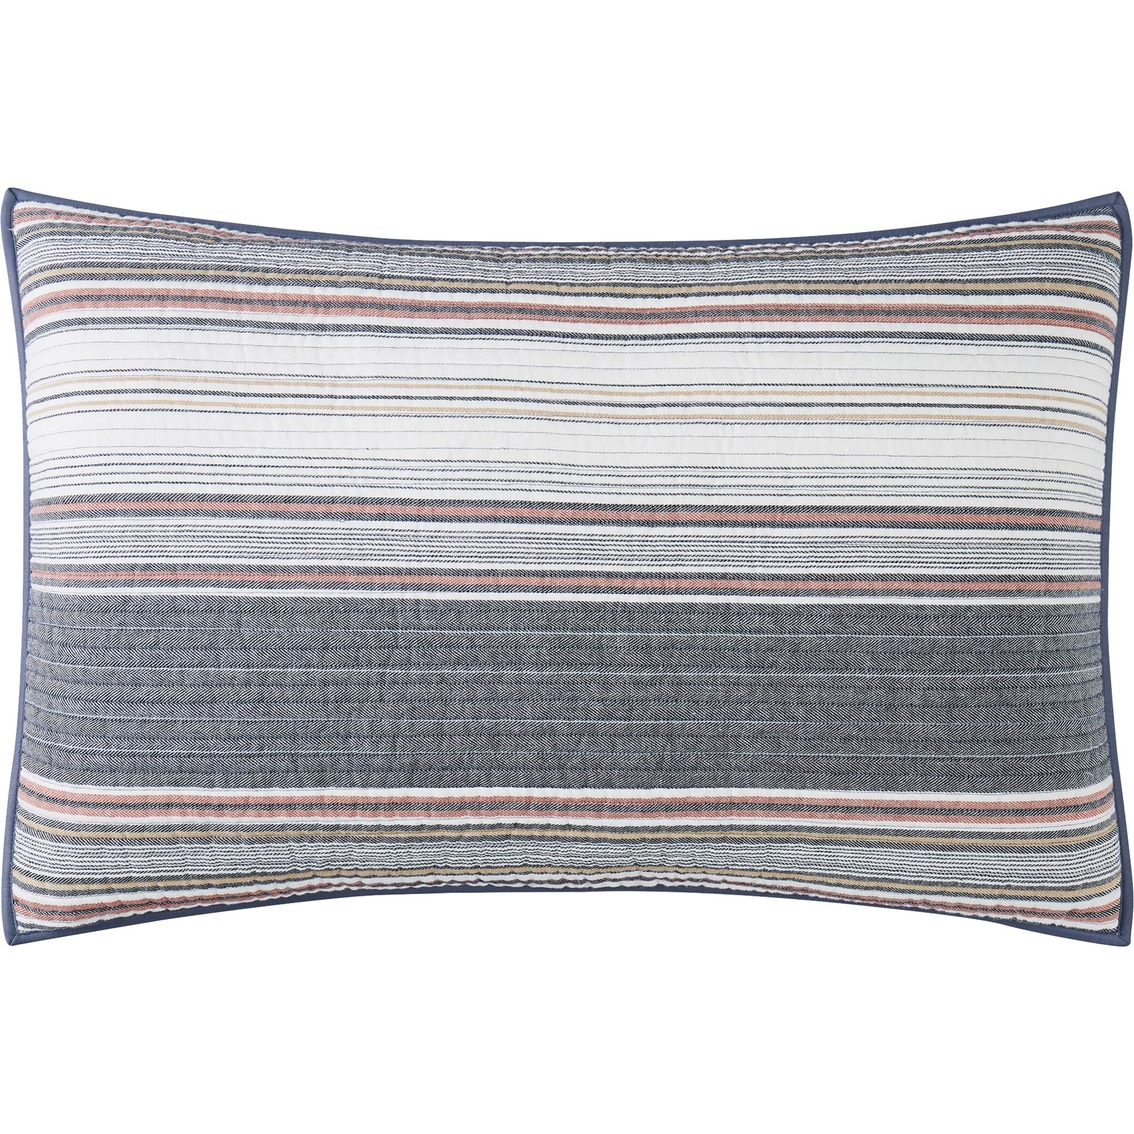 Brooklyn Loom Hudson Stripe Yarn Dye Quilt Set - Image 6 of 7